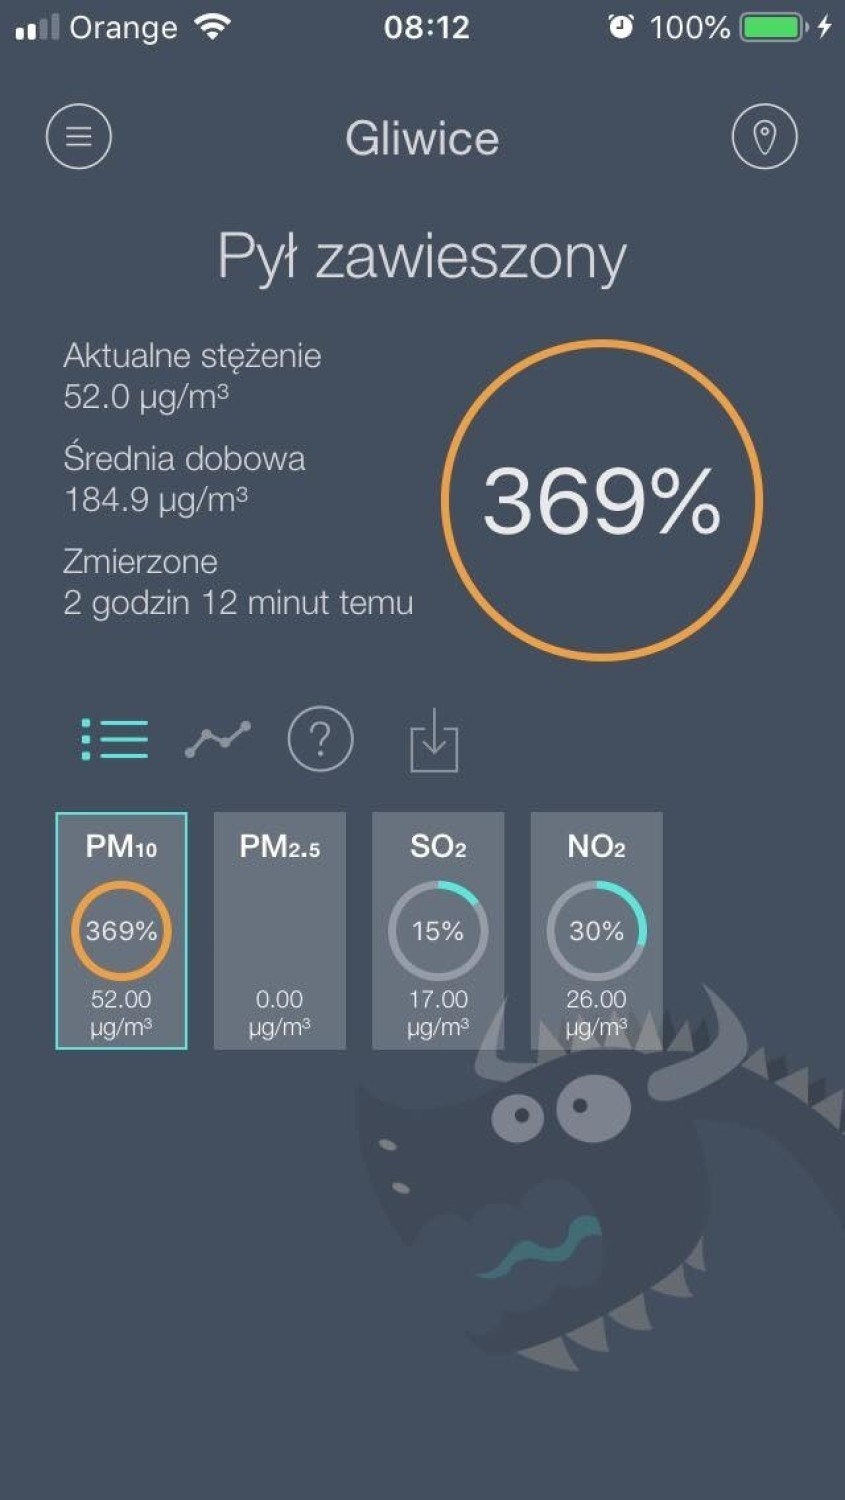 W Gliwice stężenie pyłów PM10 wyniosło 369%.